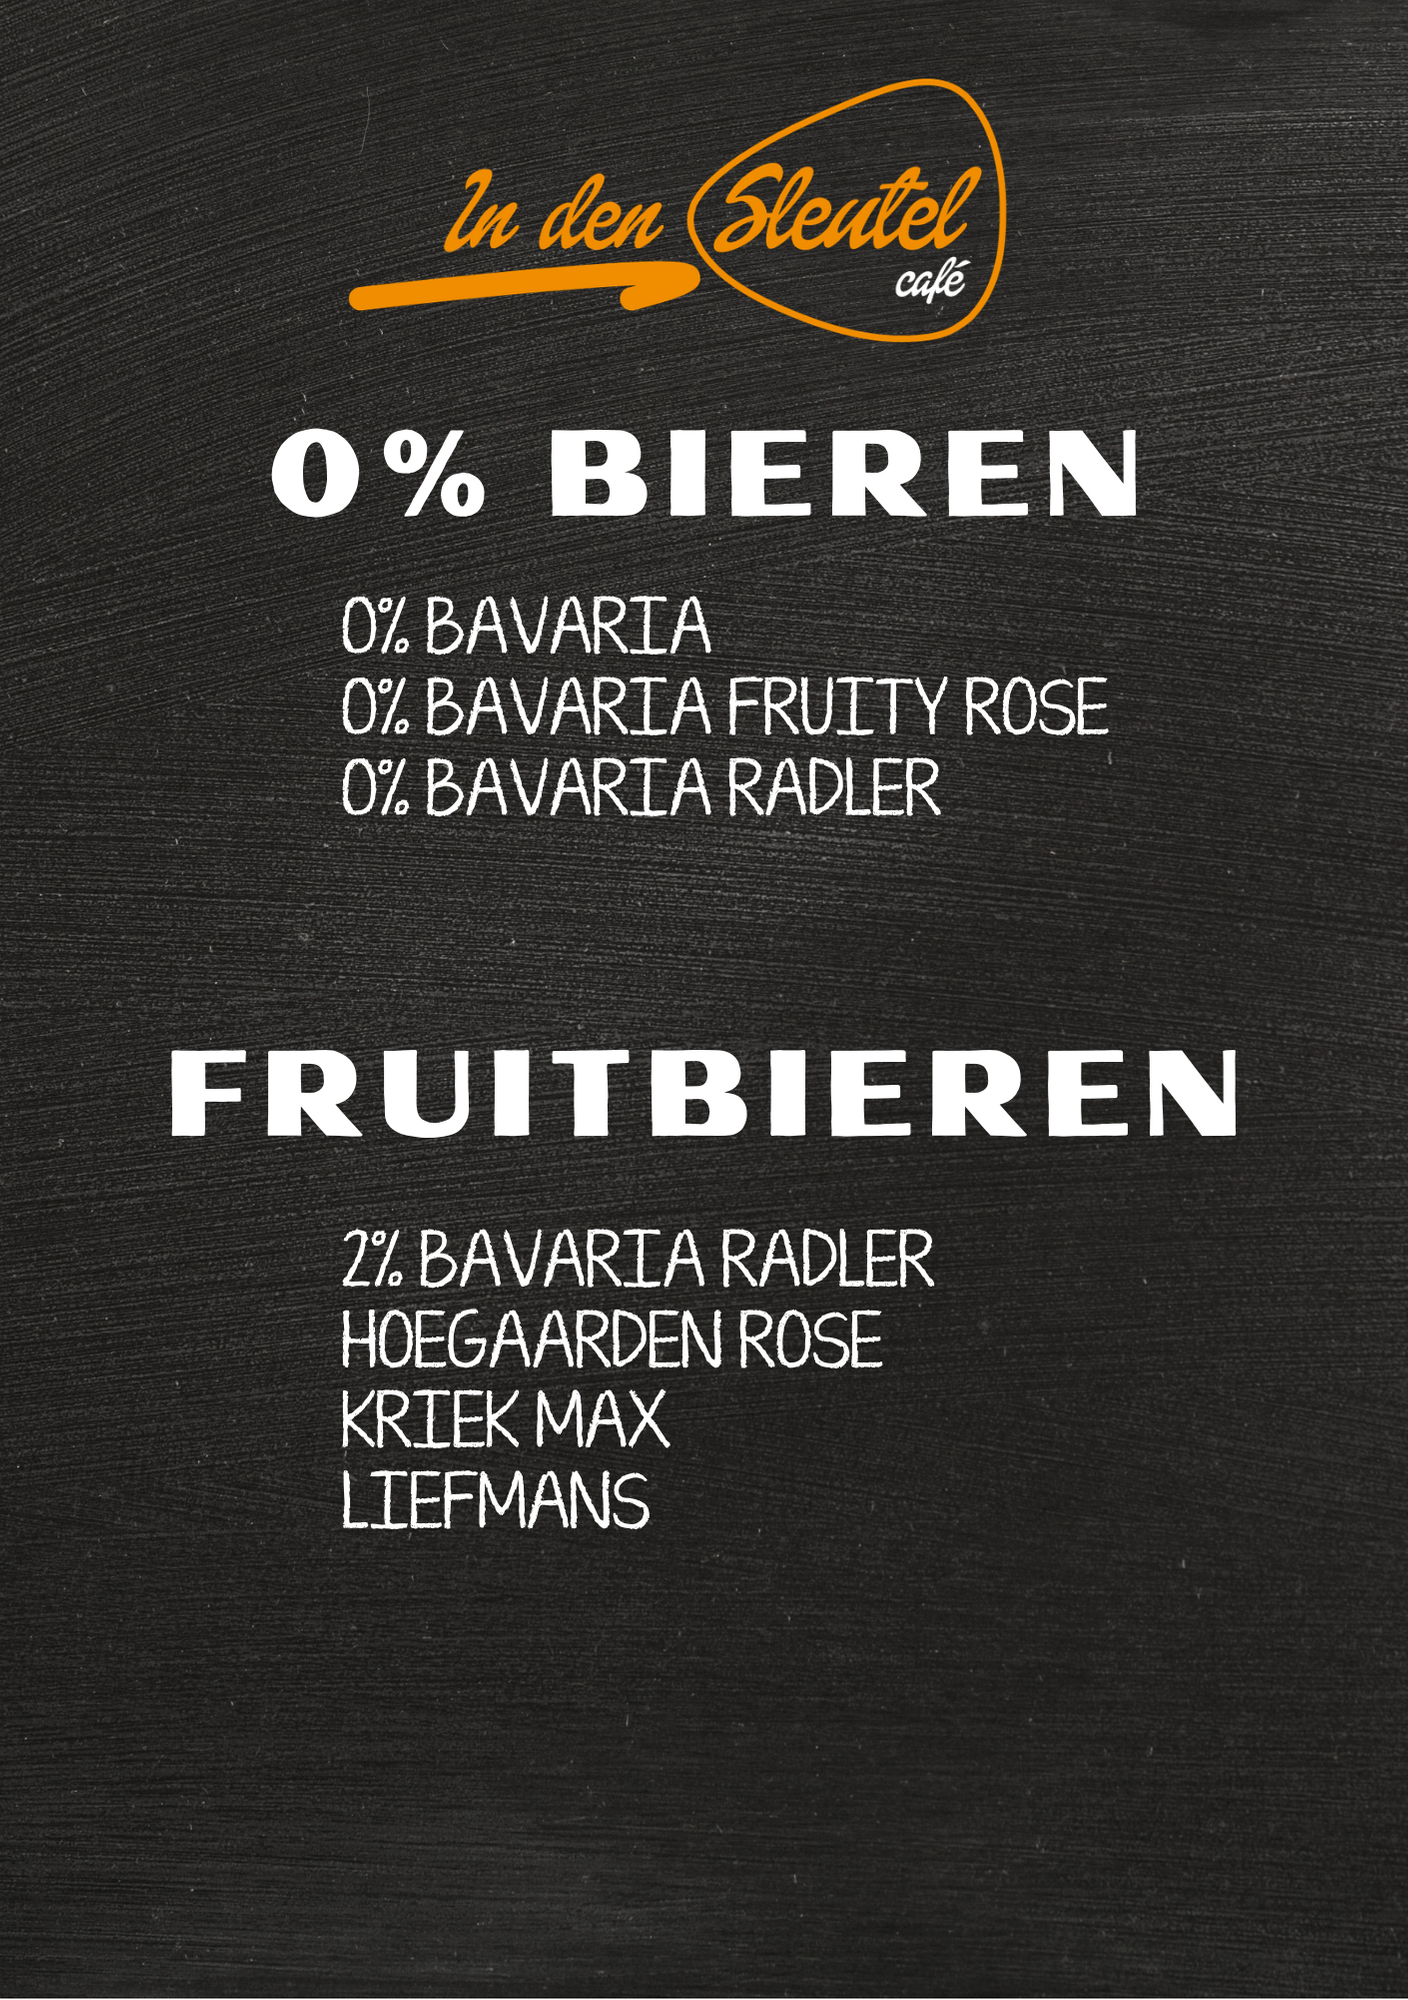 0% Bieren en Fruitbieren.png